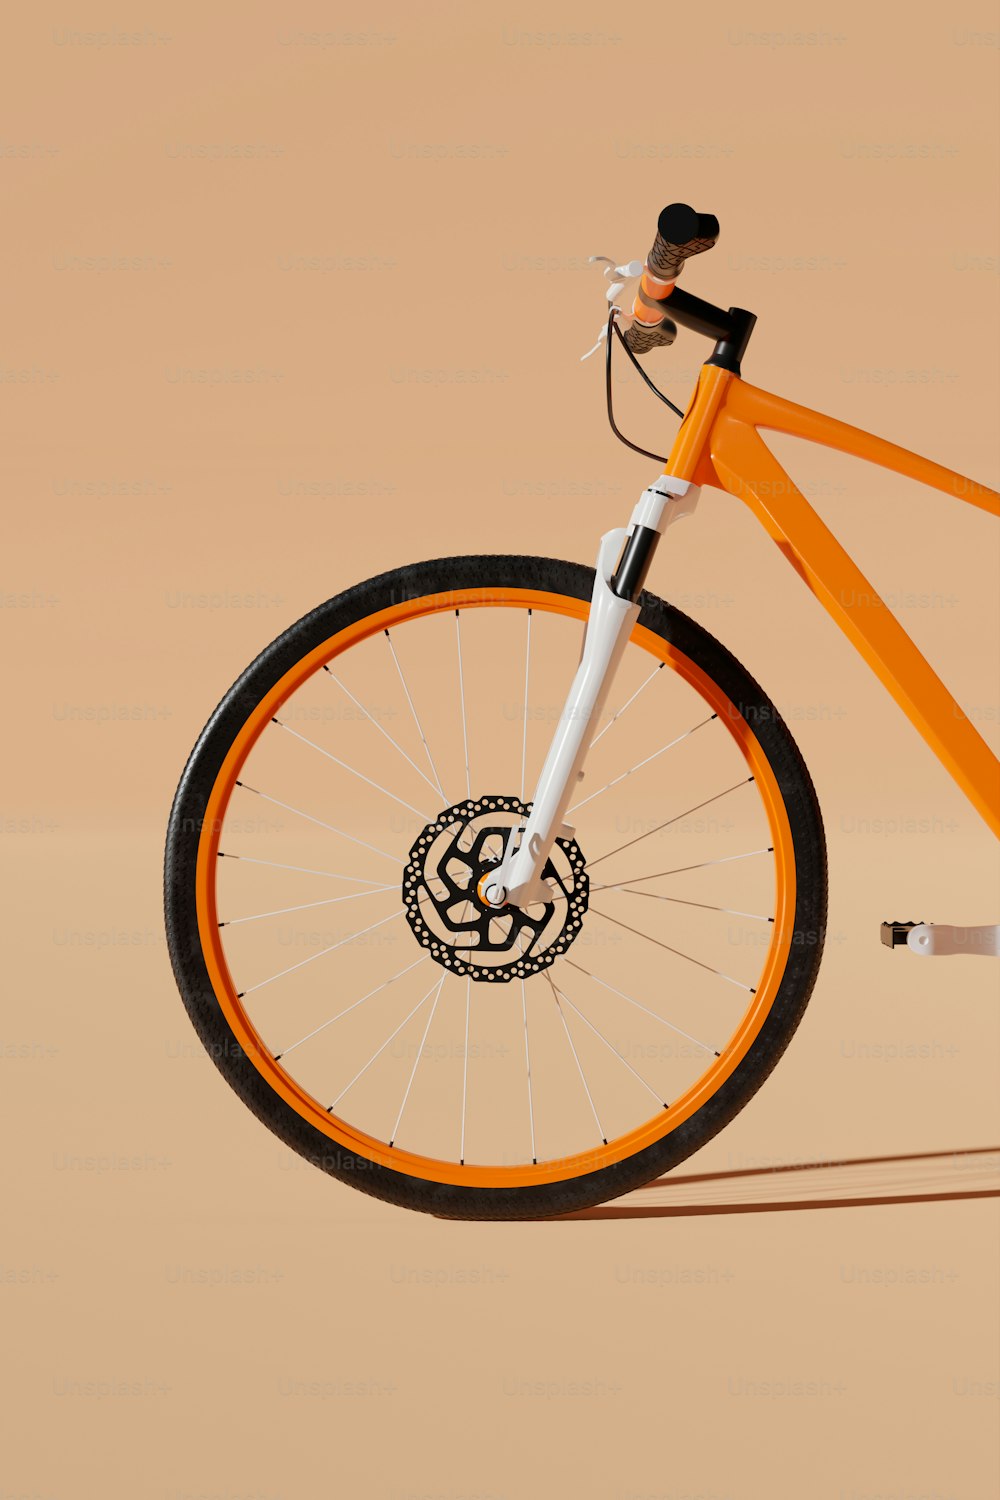 앞바퀴에 흑백 엠블럼이 있는 주황색 자전거